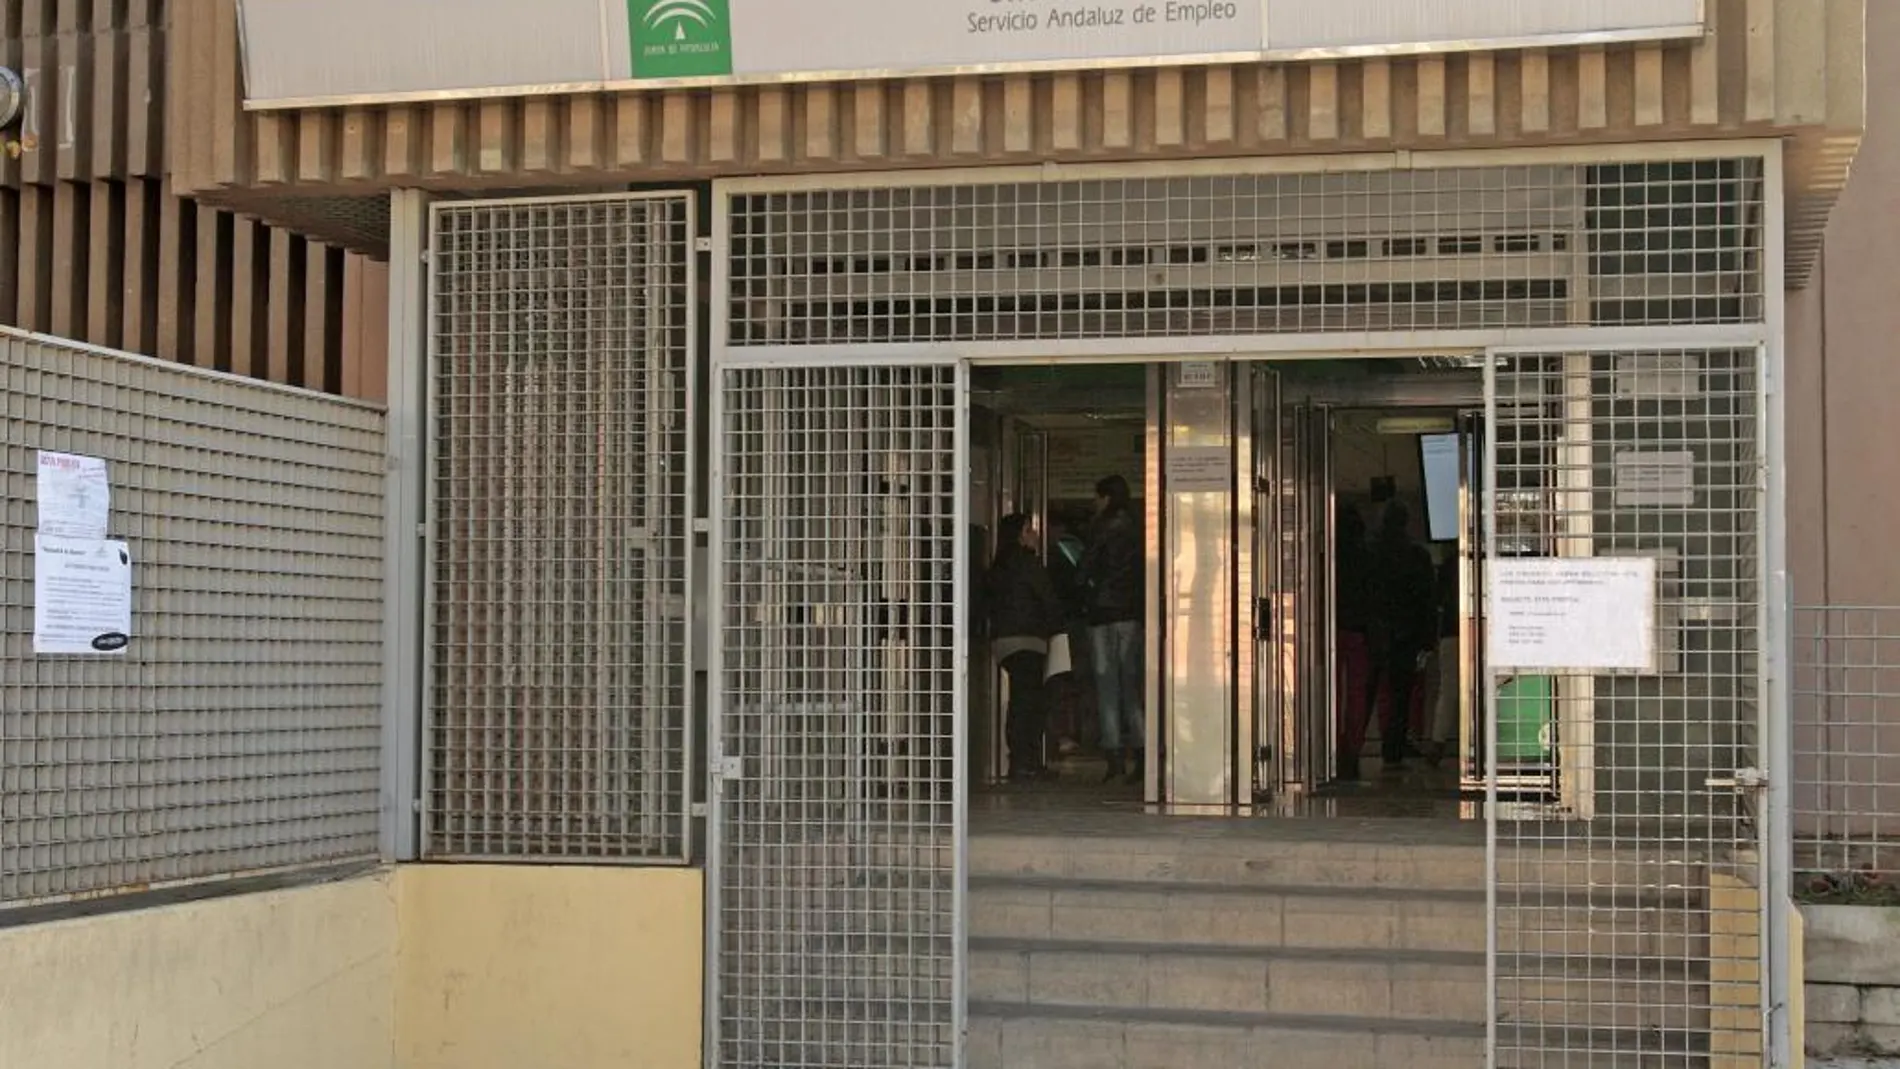 En la imagen, instalaciones del Servicio Andaluz de Empleo (SAE)